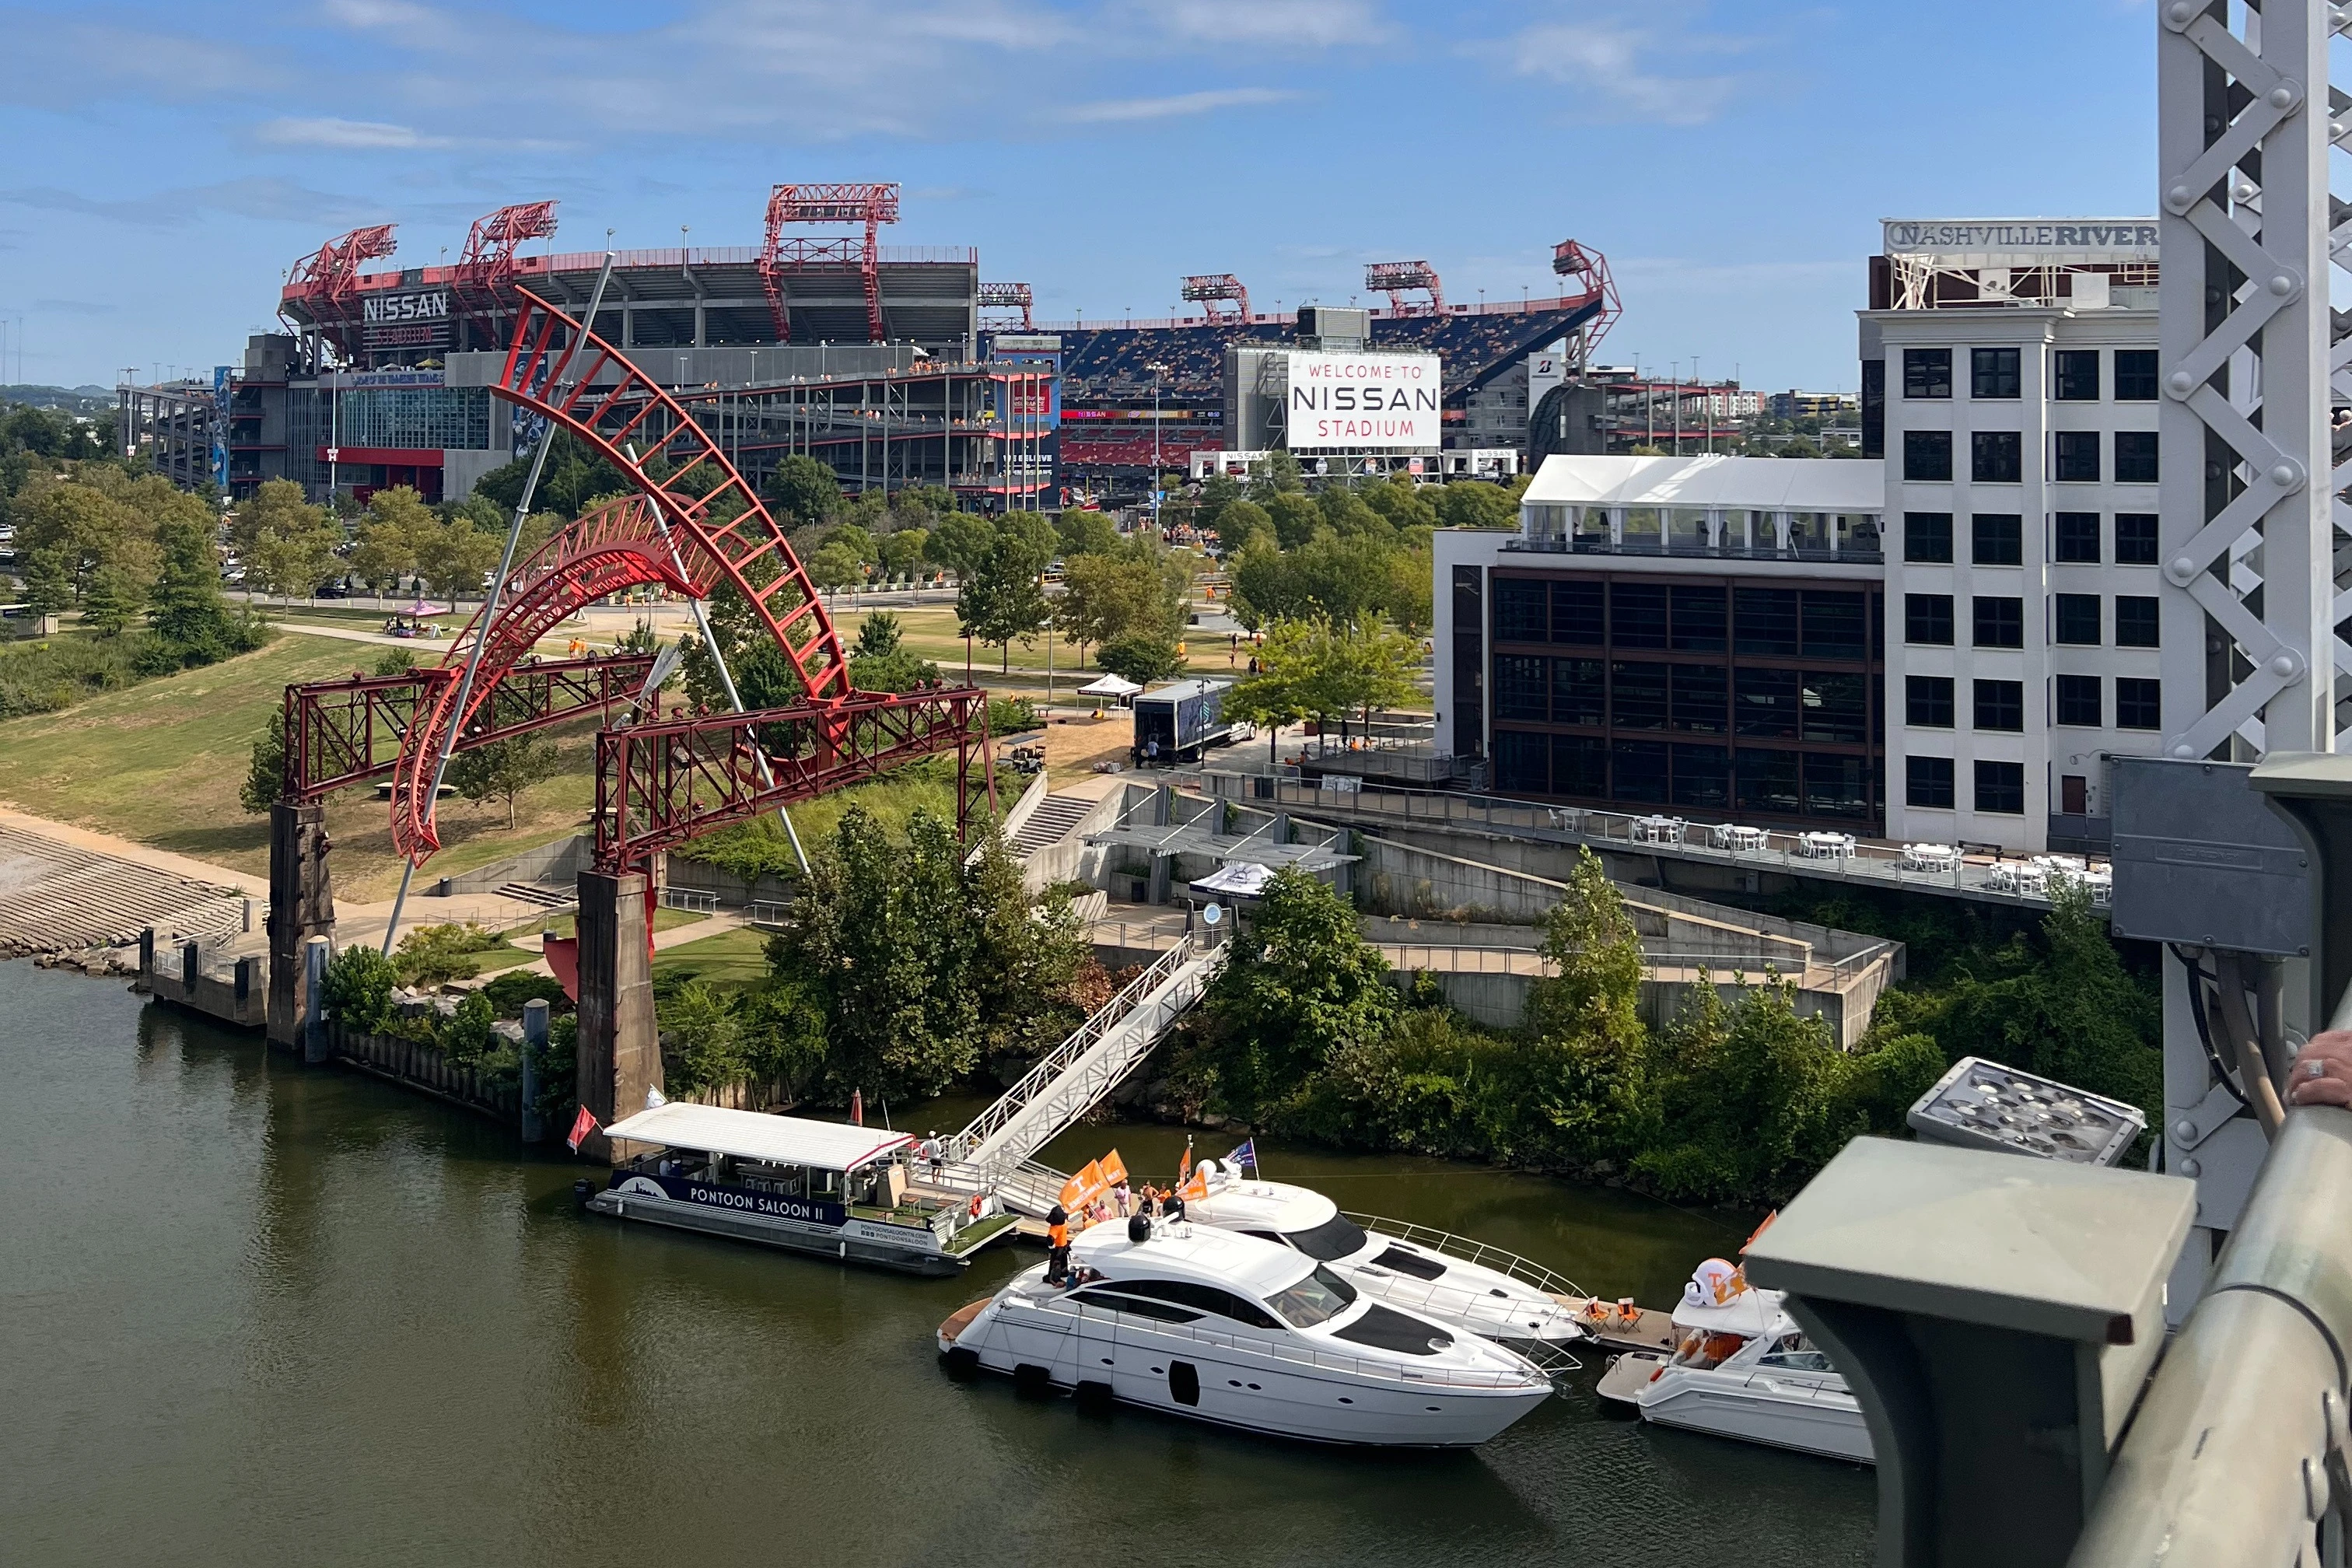 Nissan stadium is recognized as Nashville's premier sports and entertainment destination.